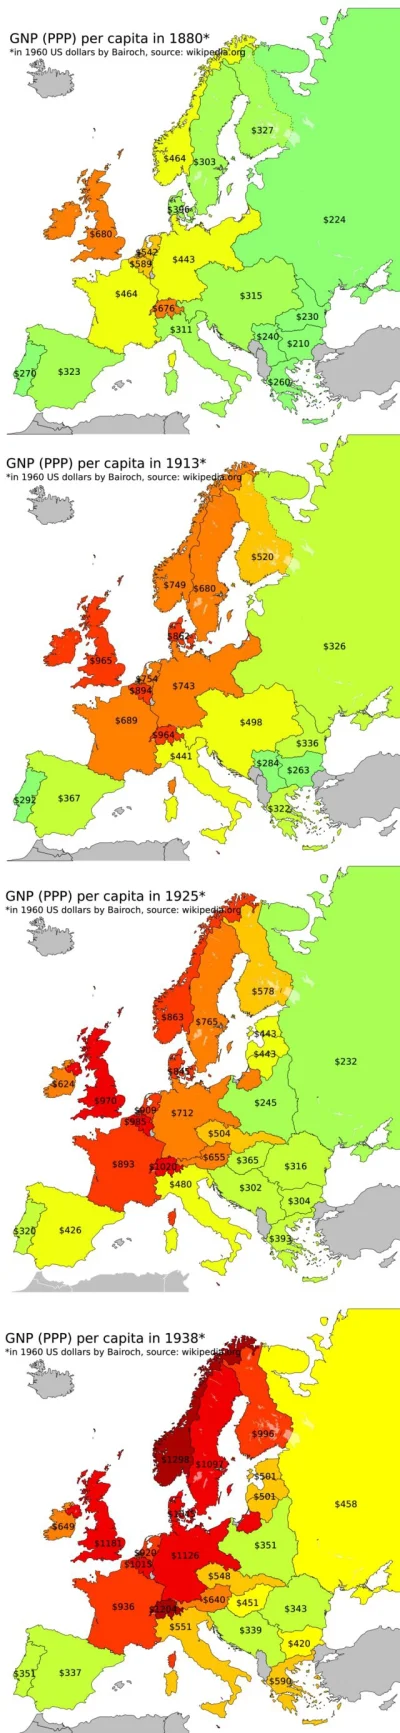 m.....n - @Kakergetes: ciekawostka: niemcy w 1925 roku były trzy razy bogatsze niż po...